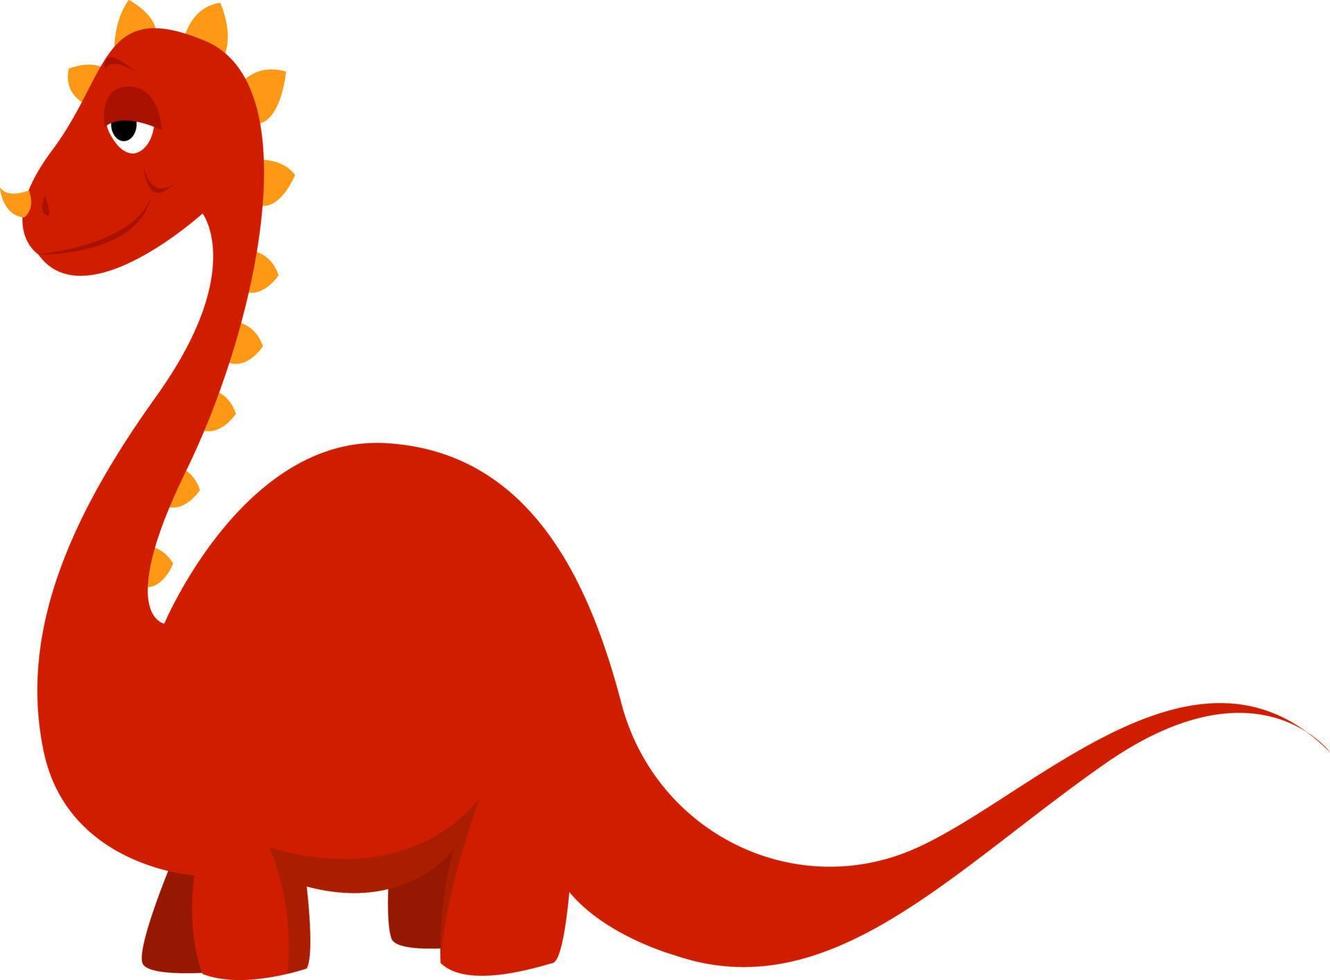 röd dinosaurie, illustration, vektor på vit bakgrund.